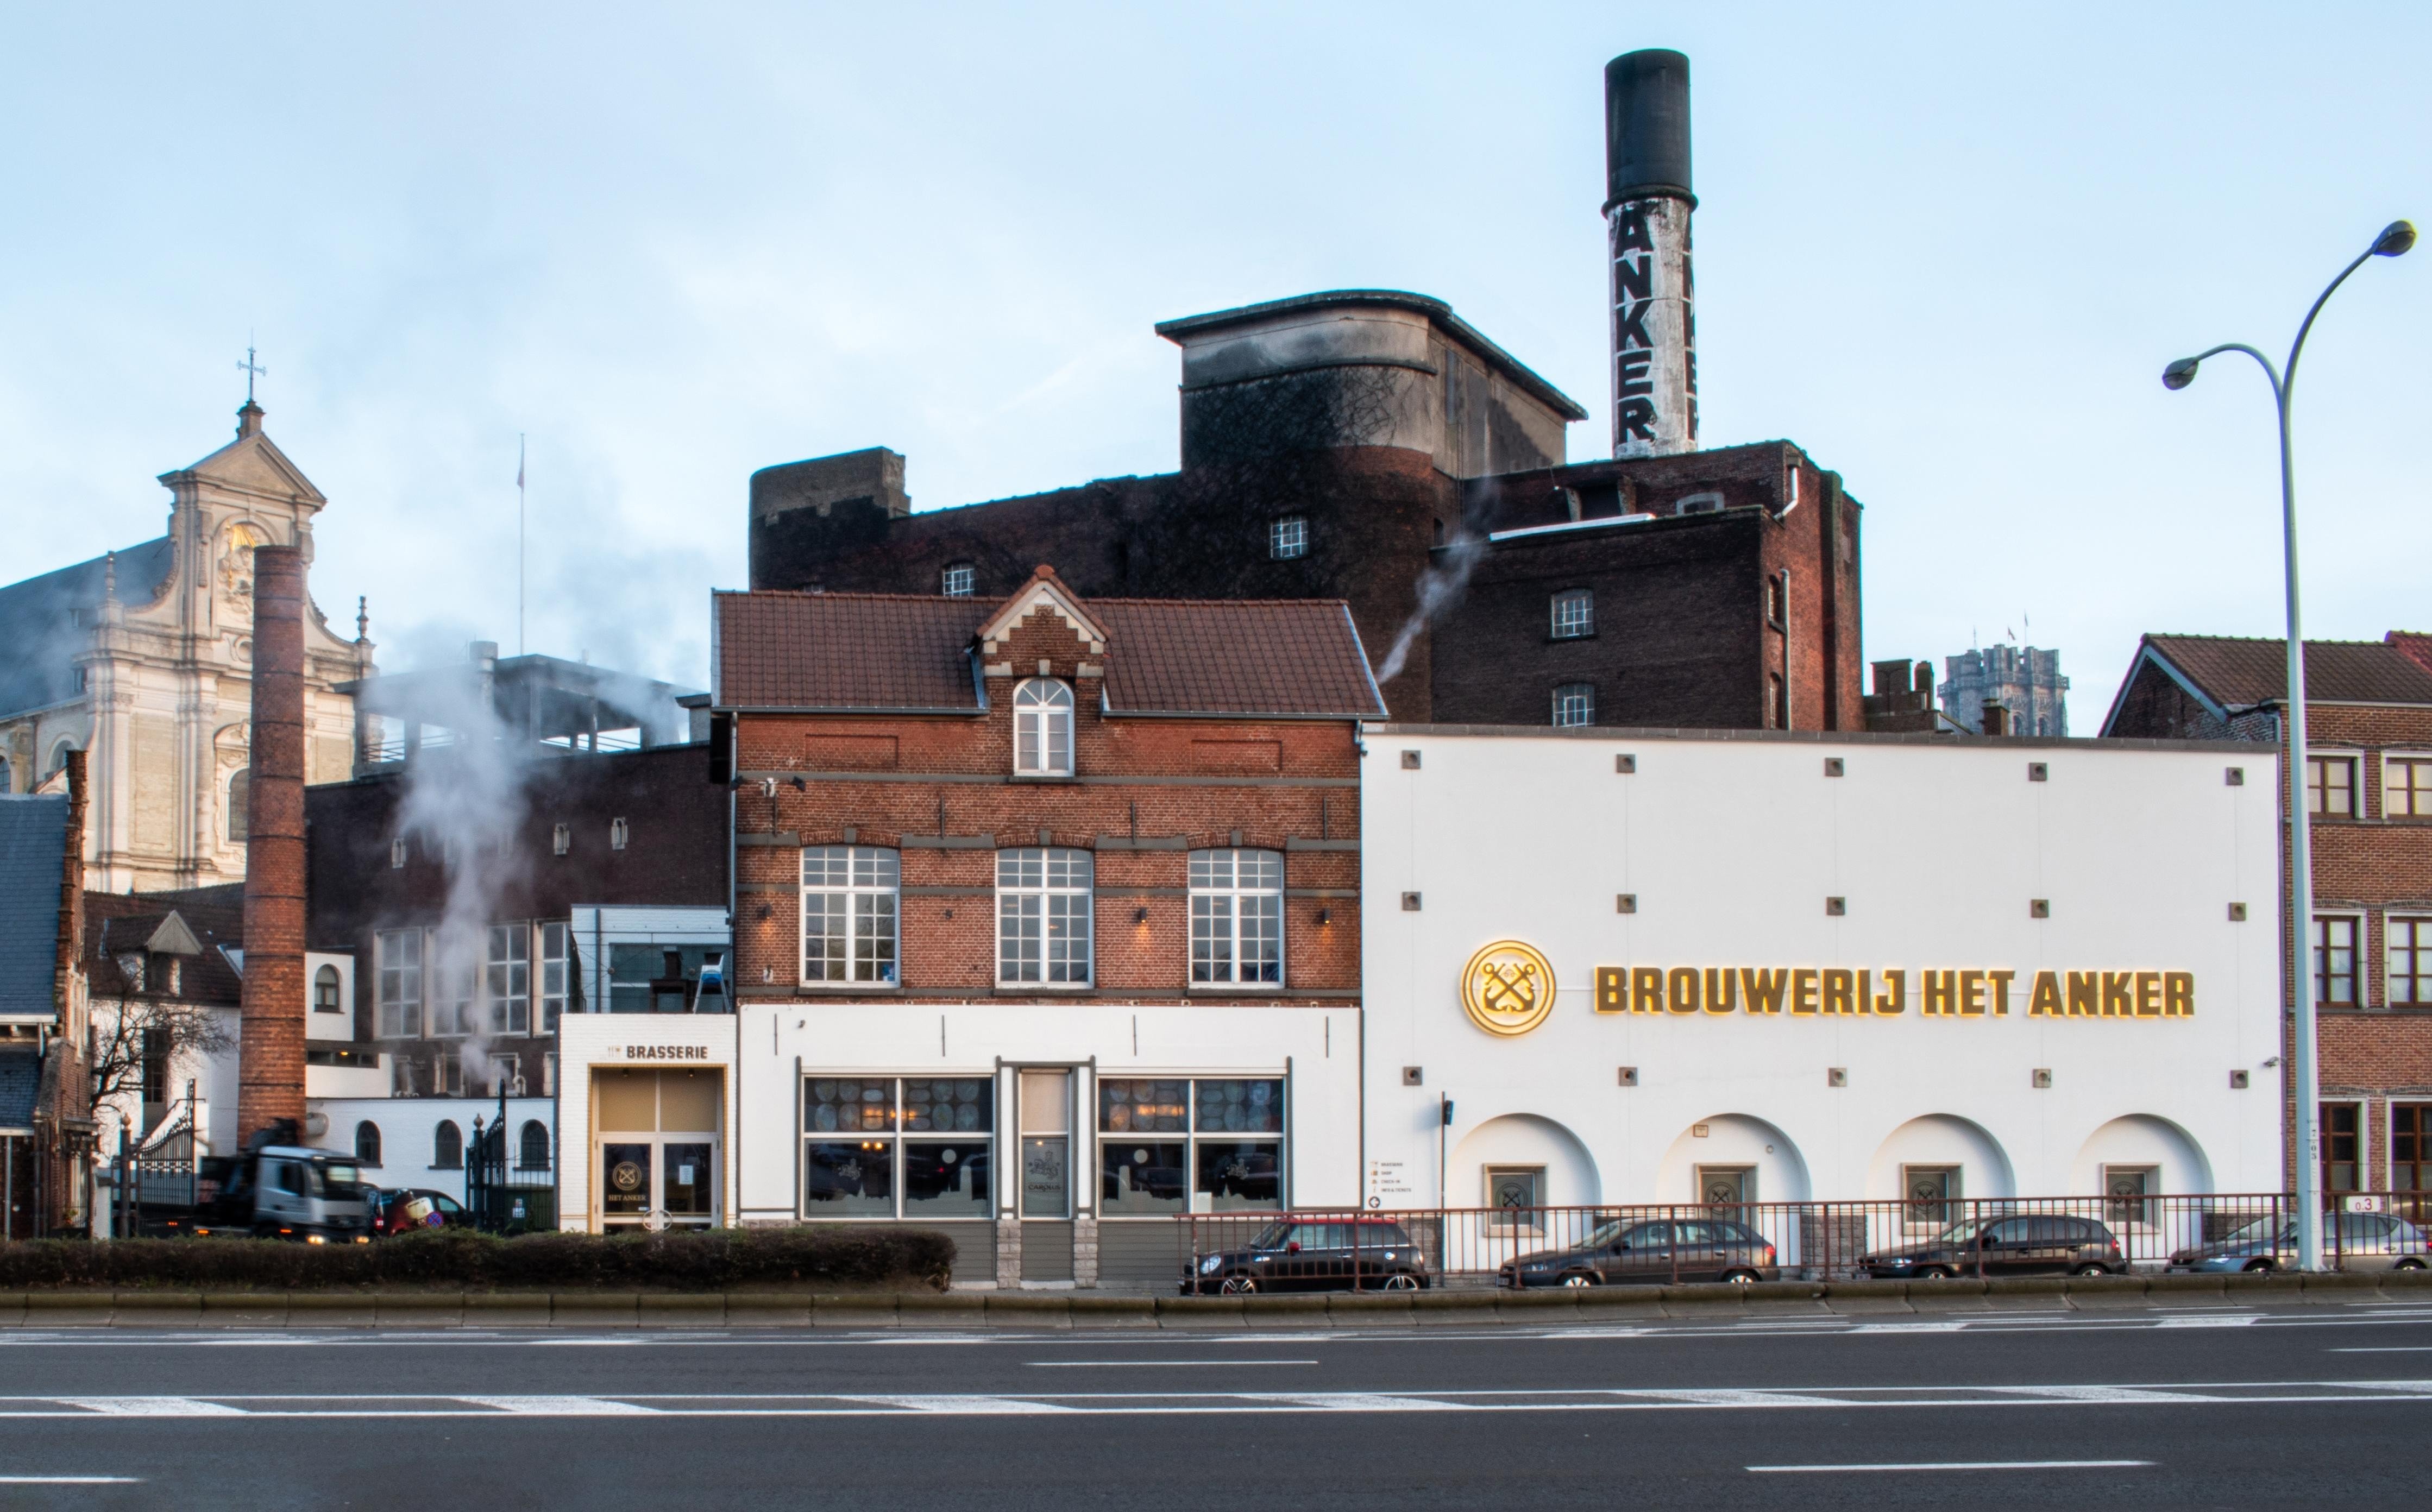 Brouwerij Het Anker brewery from Belgium